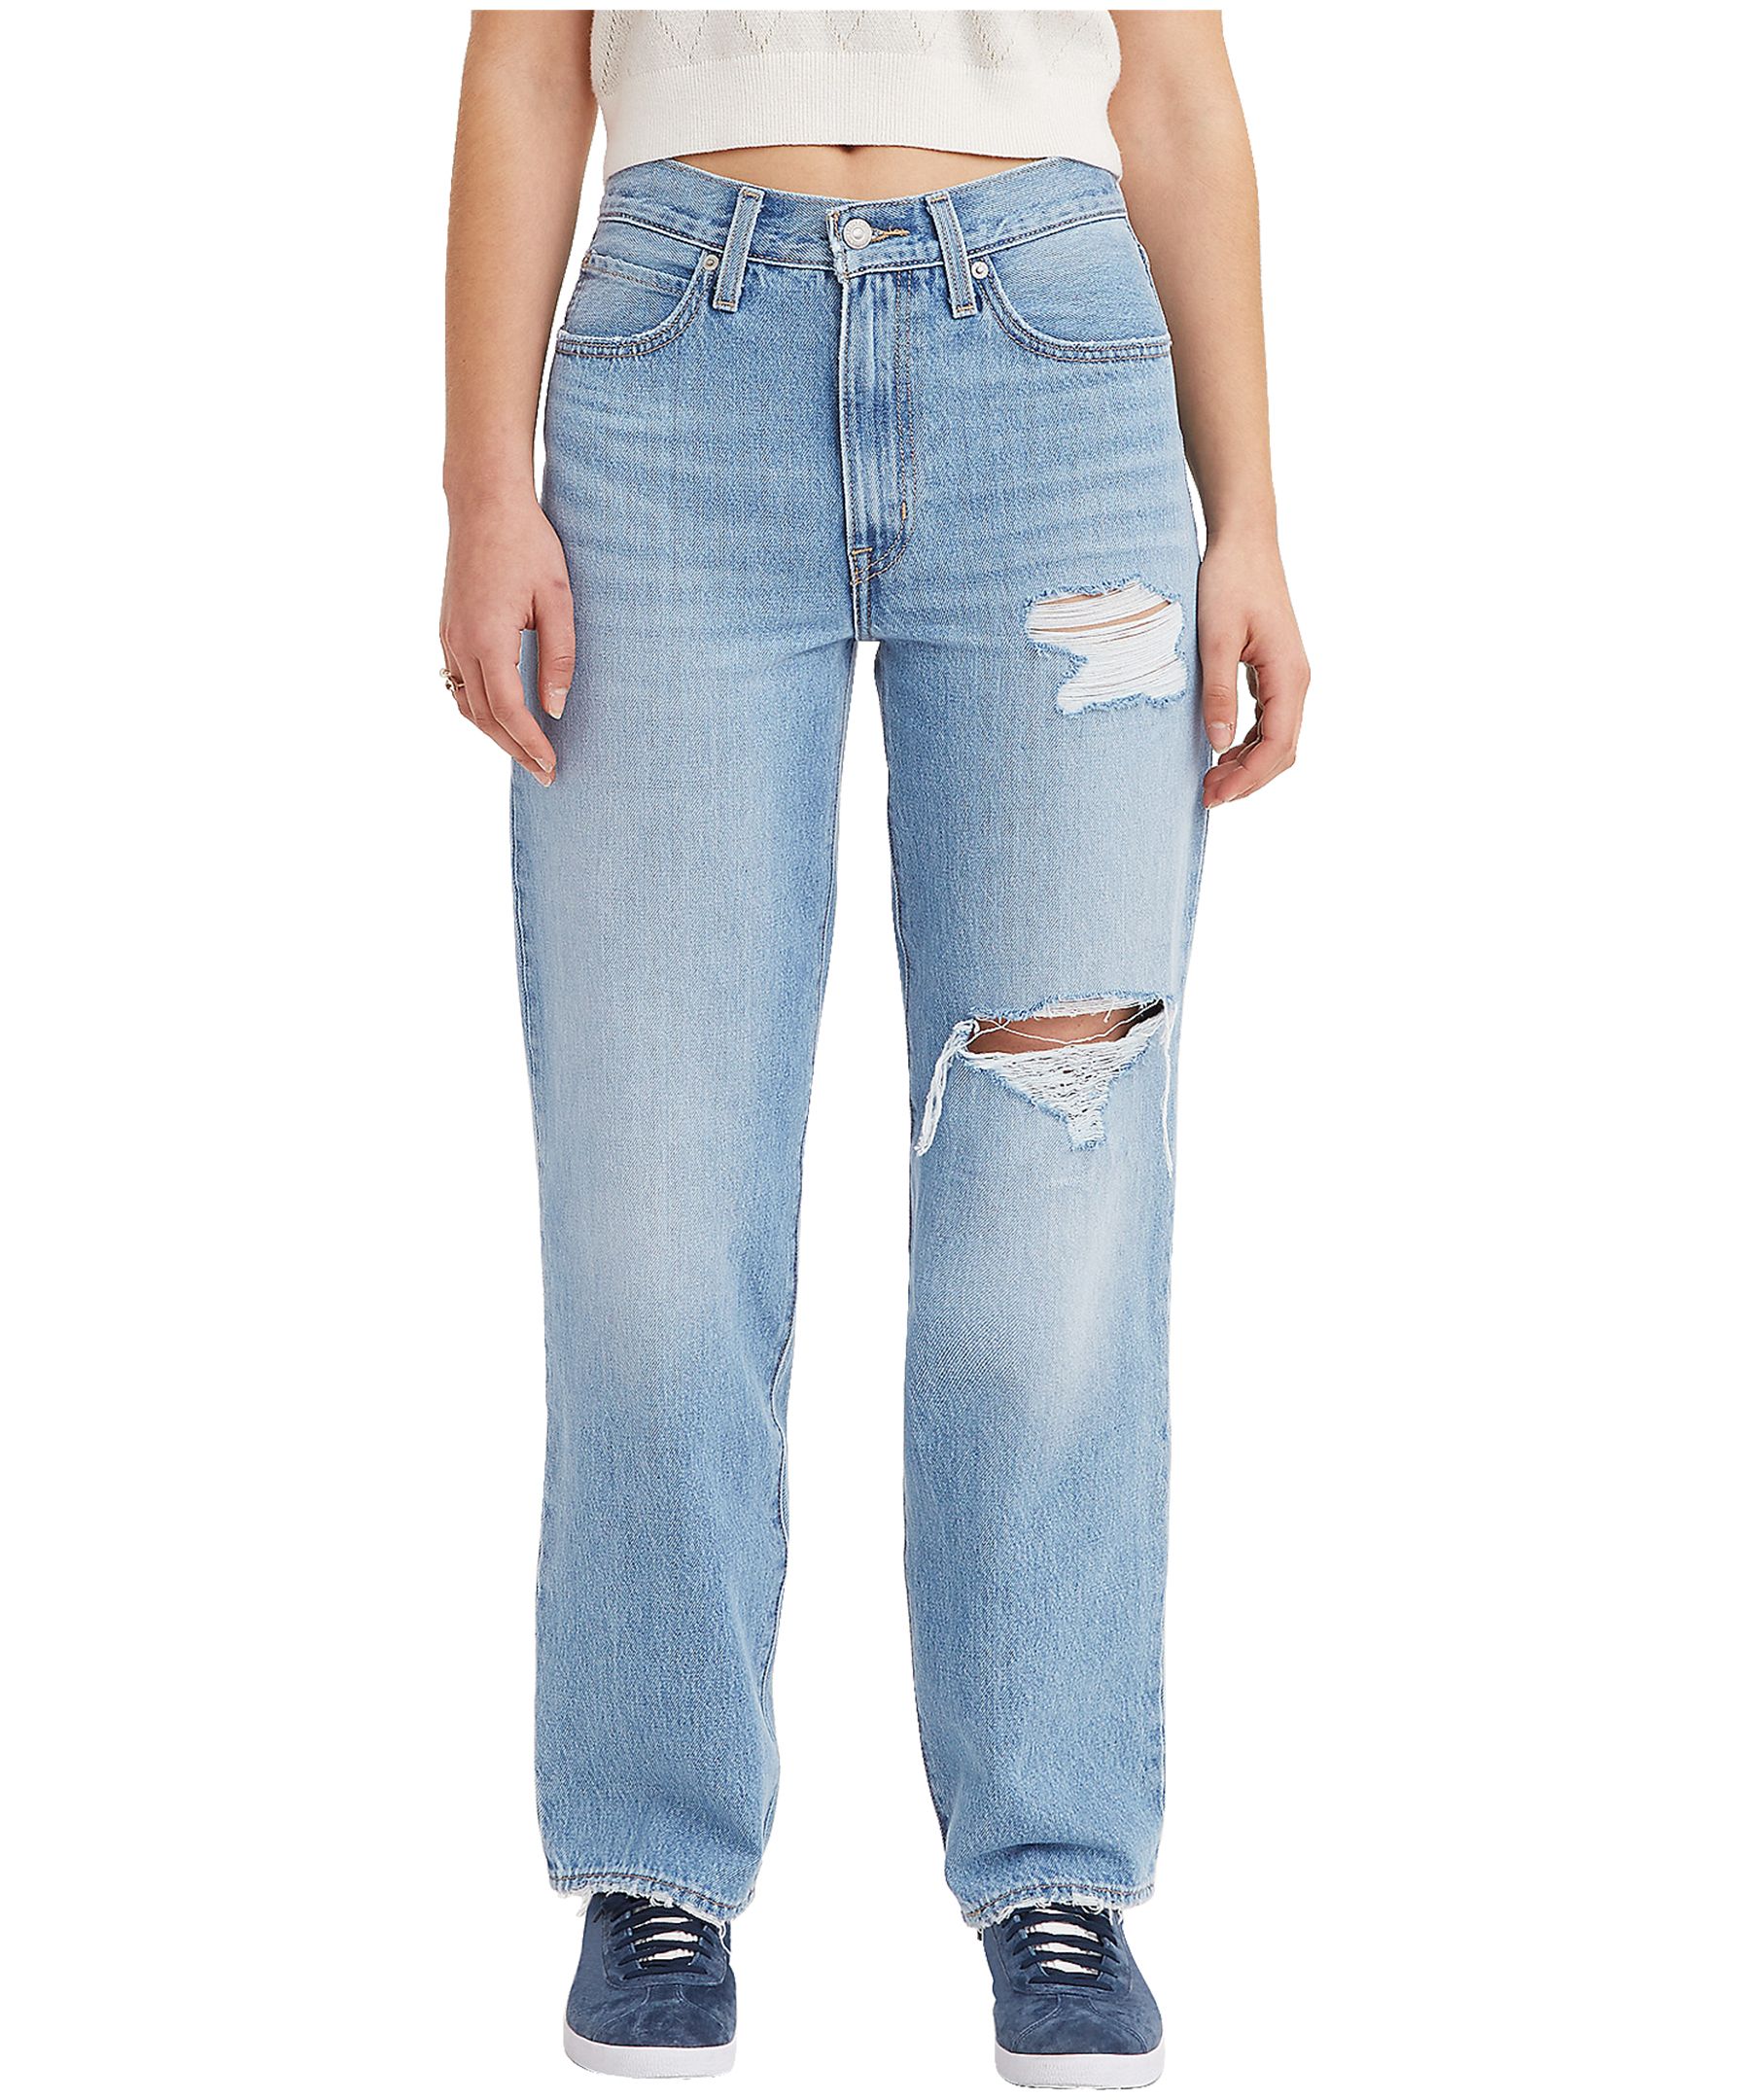 Plus Size Levi's® '94 Baggy Mid-Rise Jeans